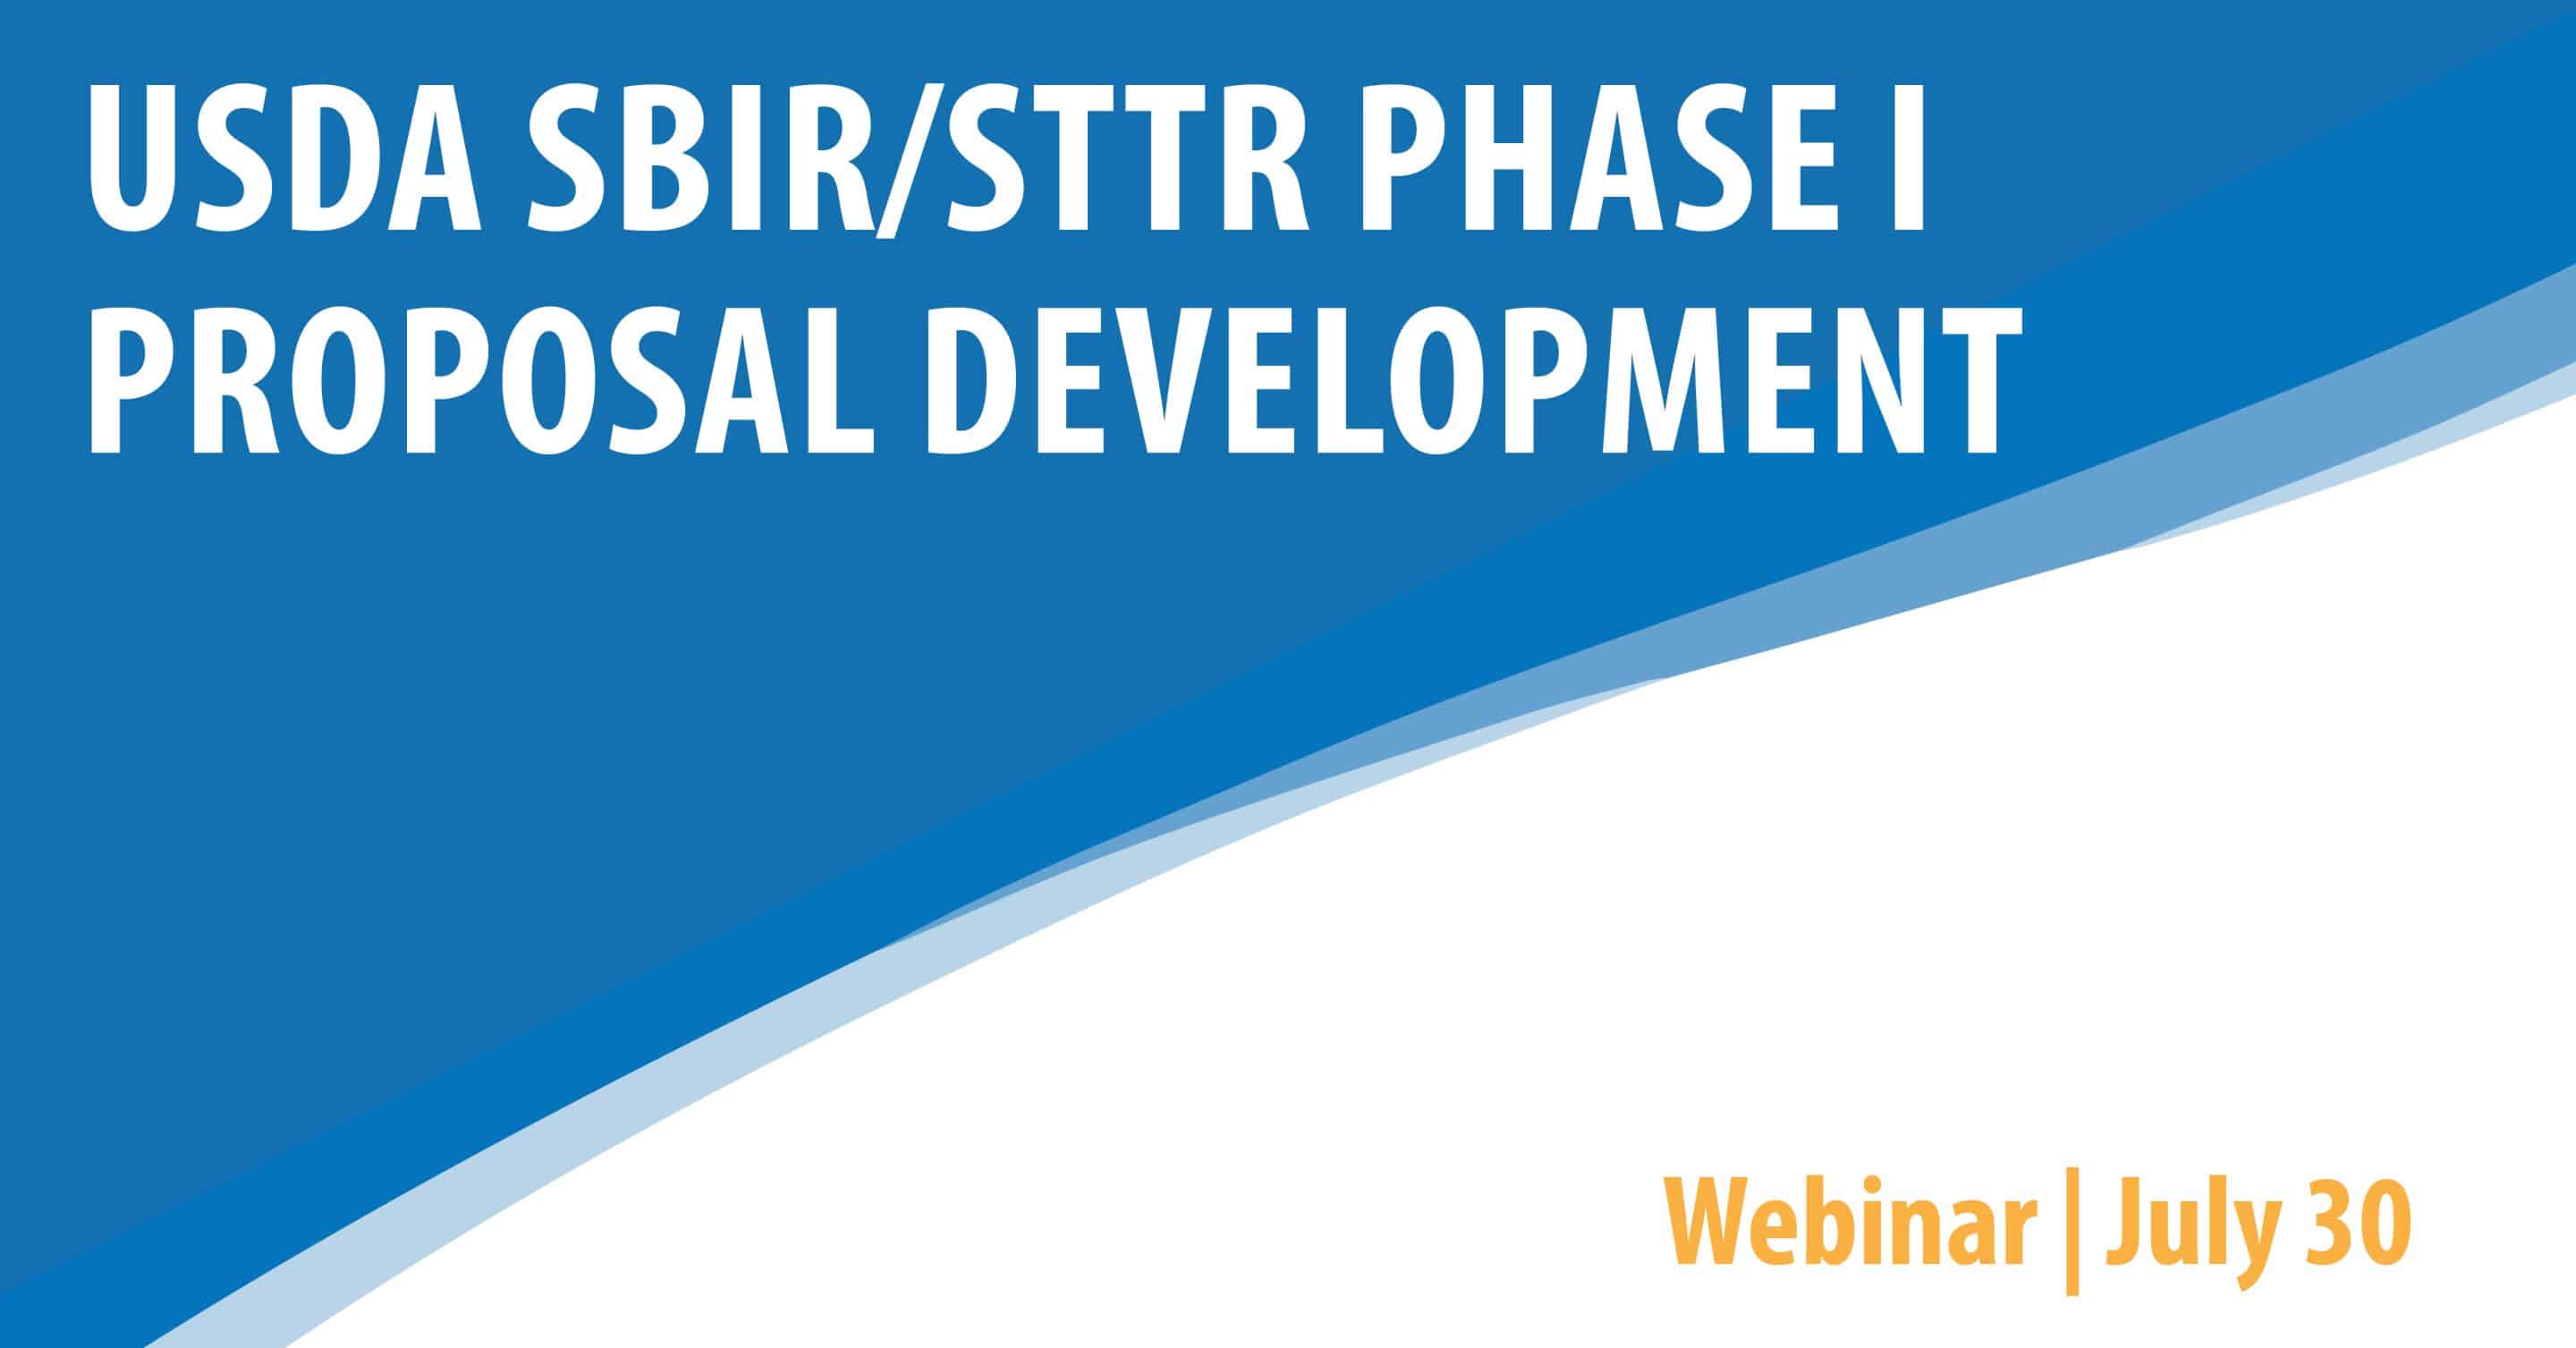 USDA SBIR/STTR Phase I Proposal Development